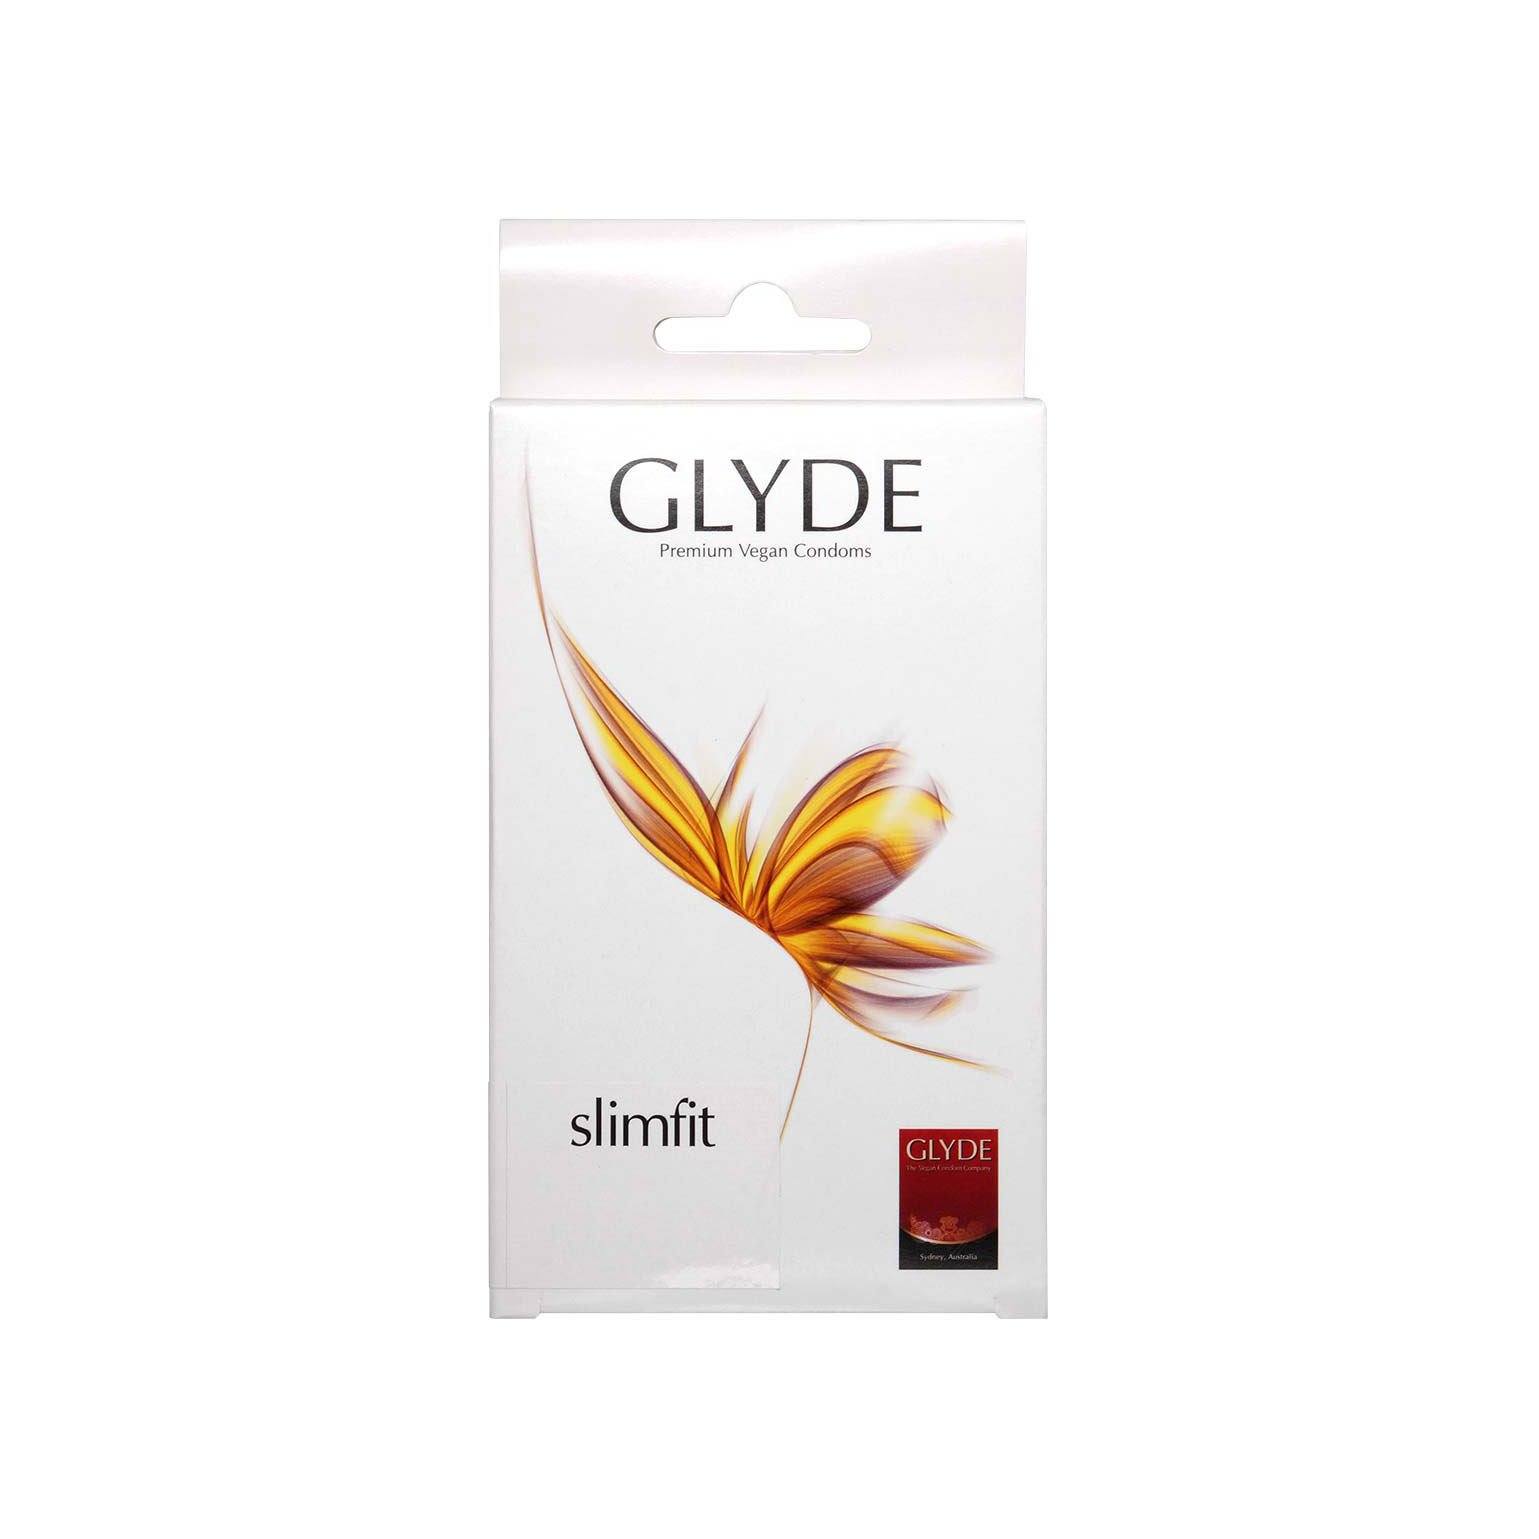 GLYDE 格蕾迪 素食主義安全套 緊身 49mm 乳膠安全套 10 片裝 安全套 購買